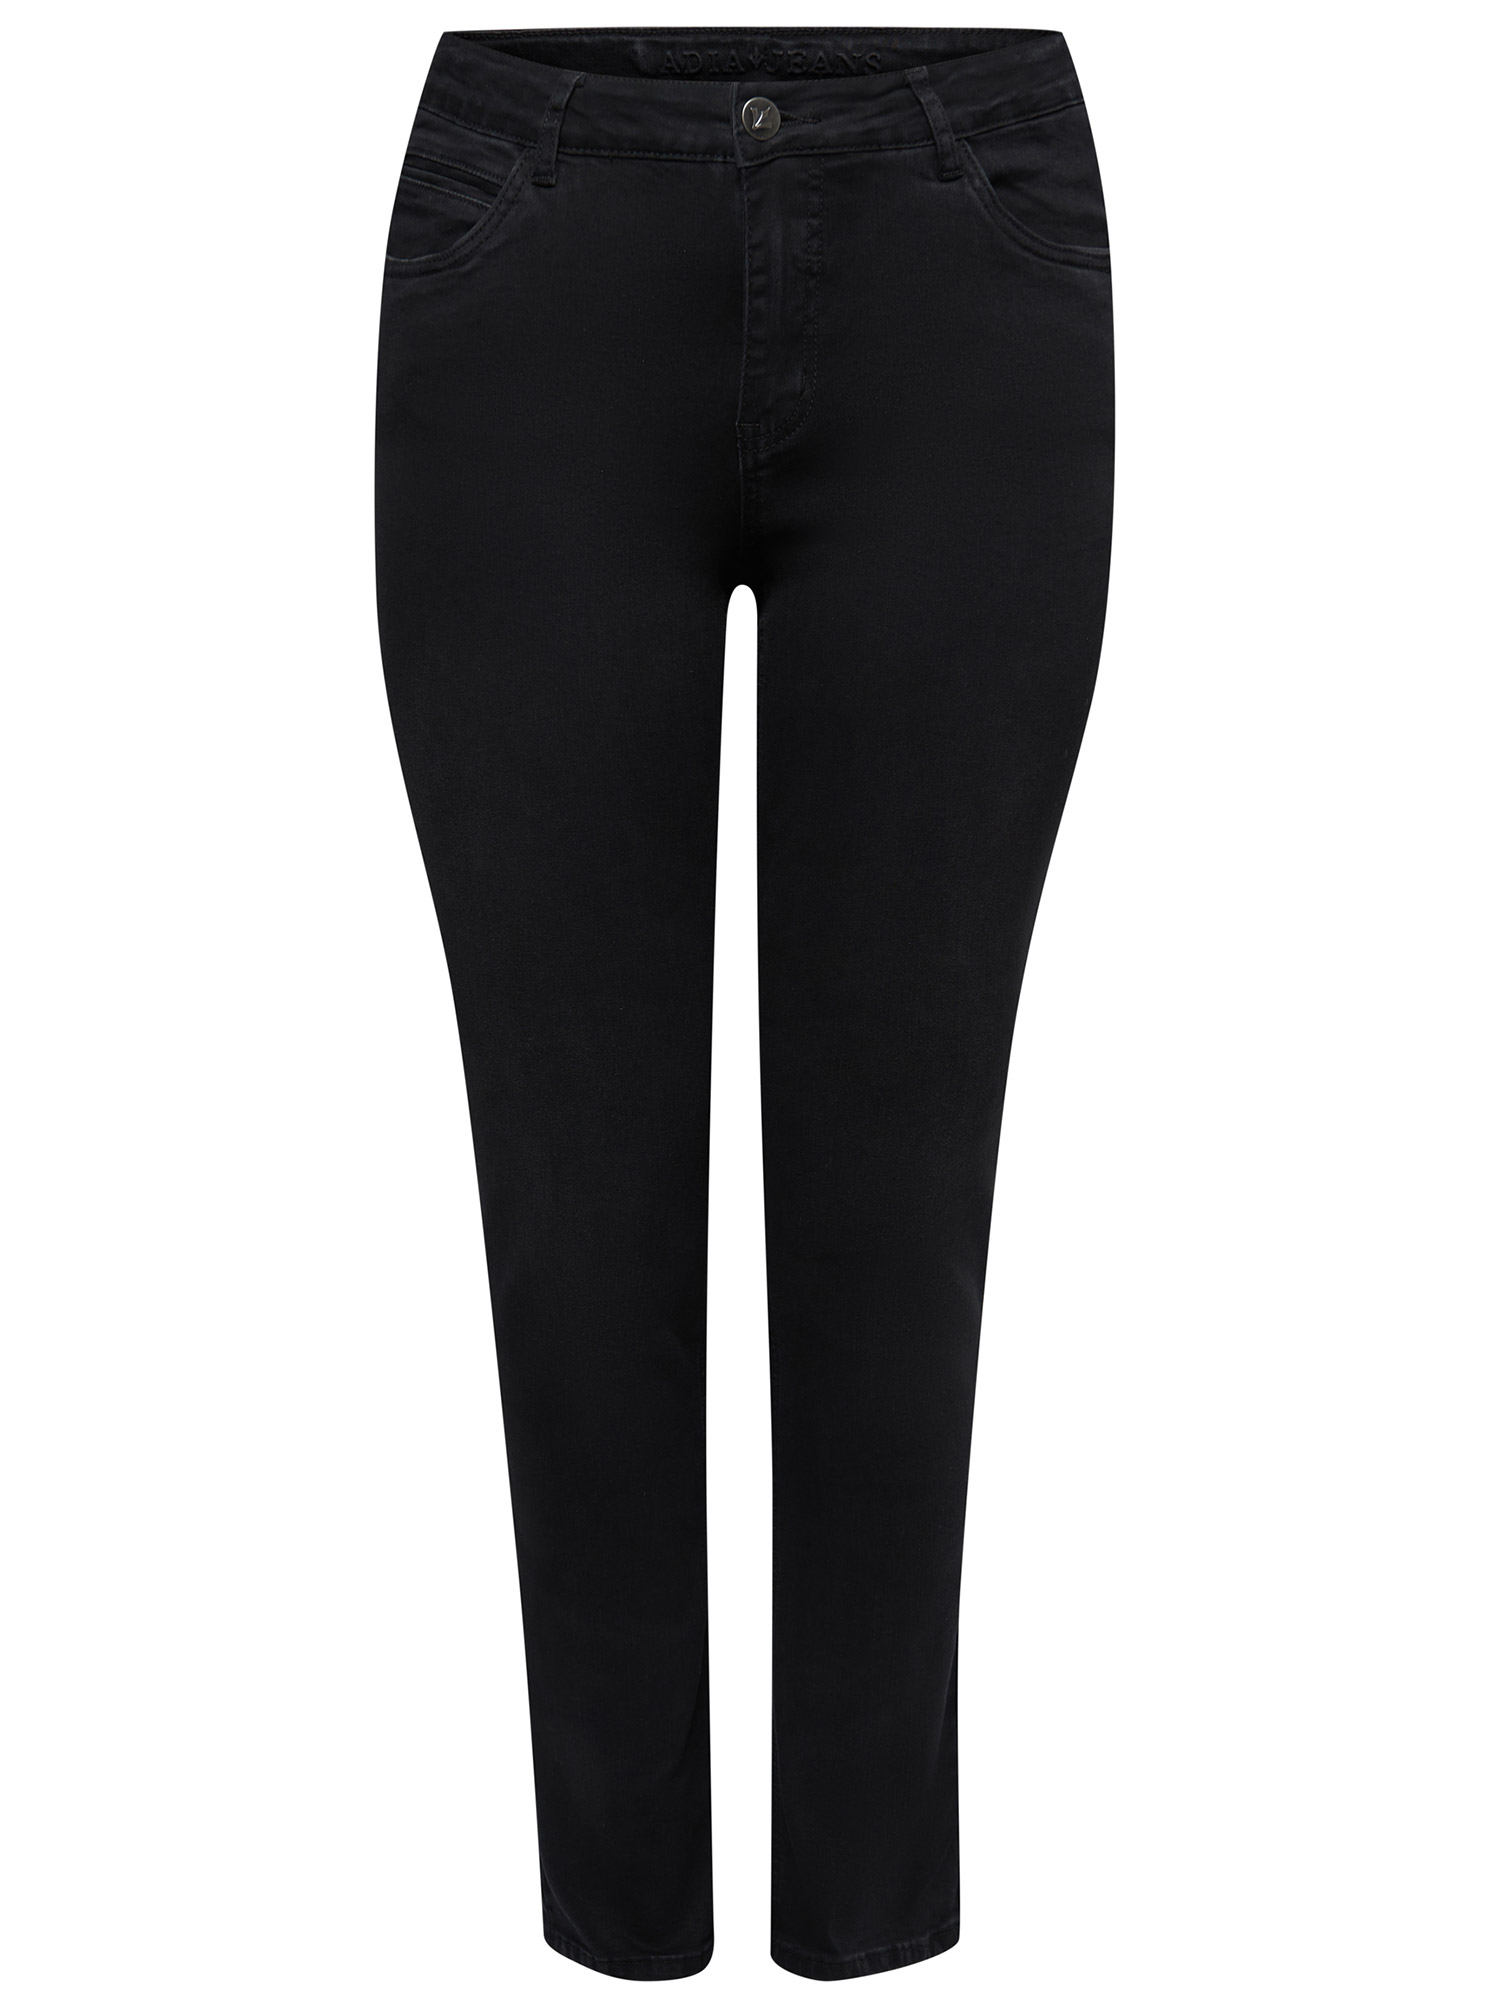 MONACO - Svarta jeans med hög midja och stretch fra Adia